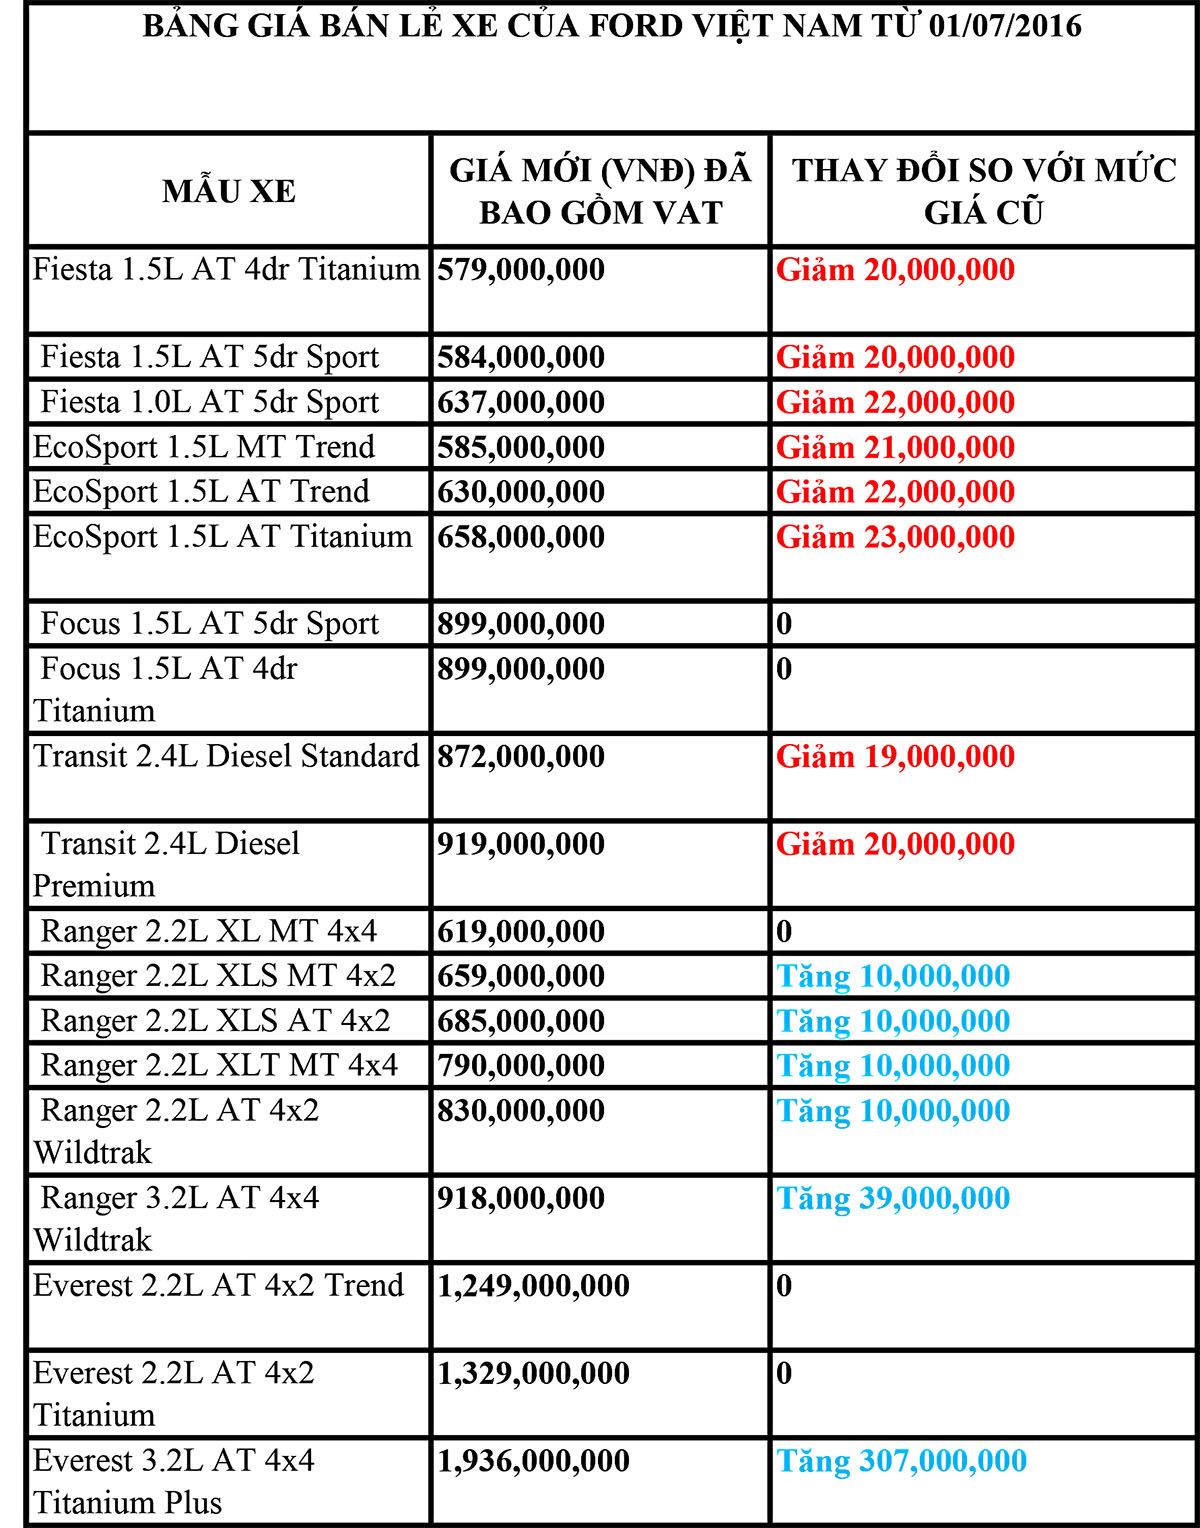 bảng giá bán lẻ xe của Ford Việt Nam từ 01/07/2016